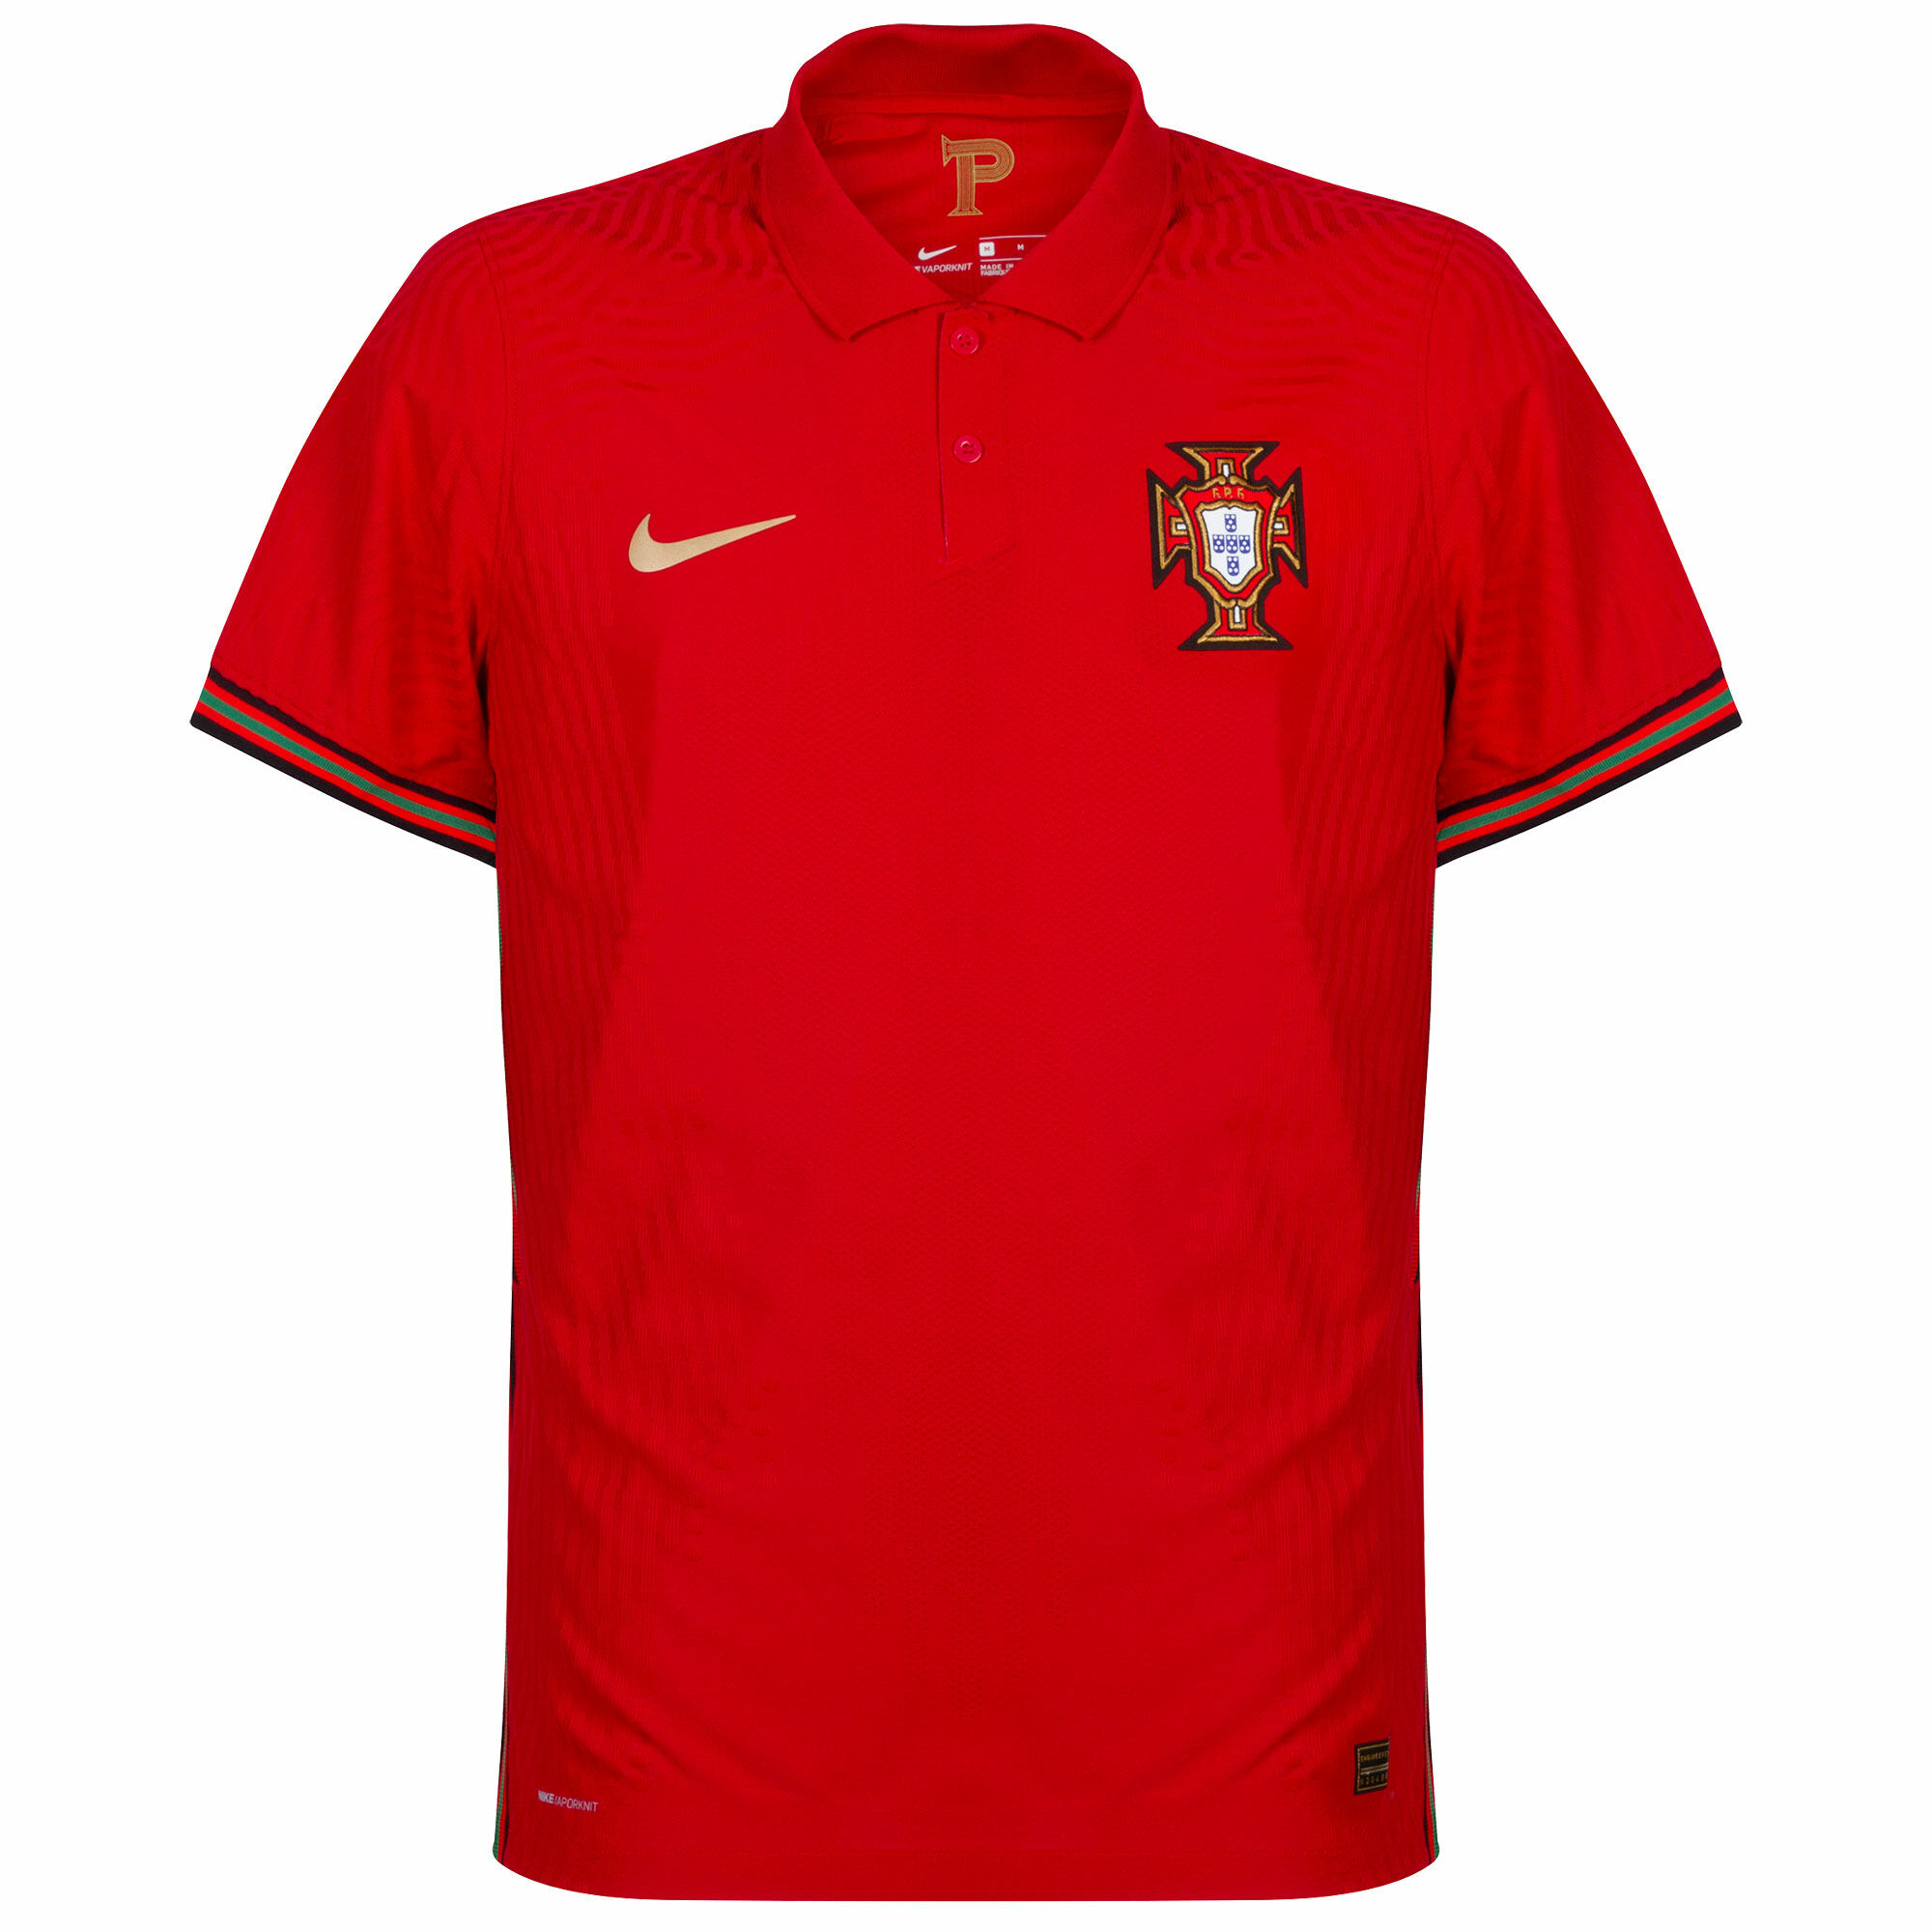 Portugalsko - Dres fotbalový "Vapor Match" - sezóna 2020/21, domácí, červený